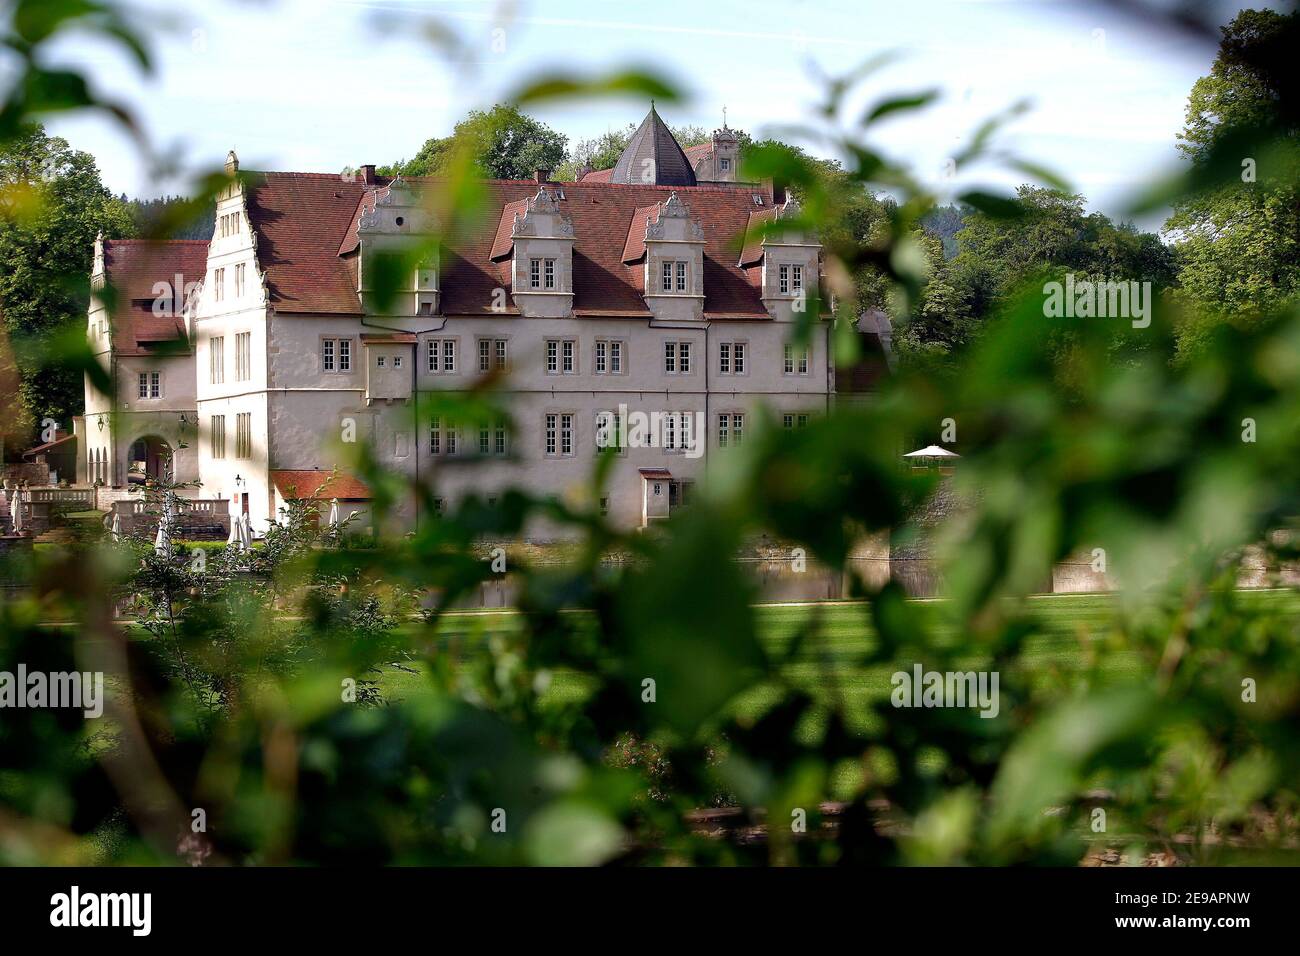 Schloss Münchhausen bei Hannover, wo die französische Nationalmannschaft während der WM am 9. Juni 2006 in Hannover weilte. Foto von Gouhier-Hahn-Orban/Cameleon/ABACAPRESS.COM Stockfoto